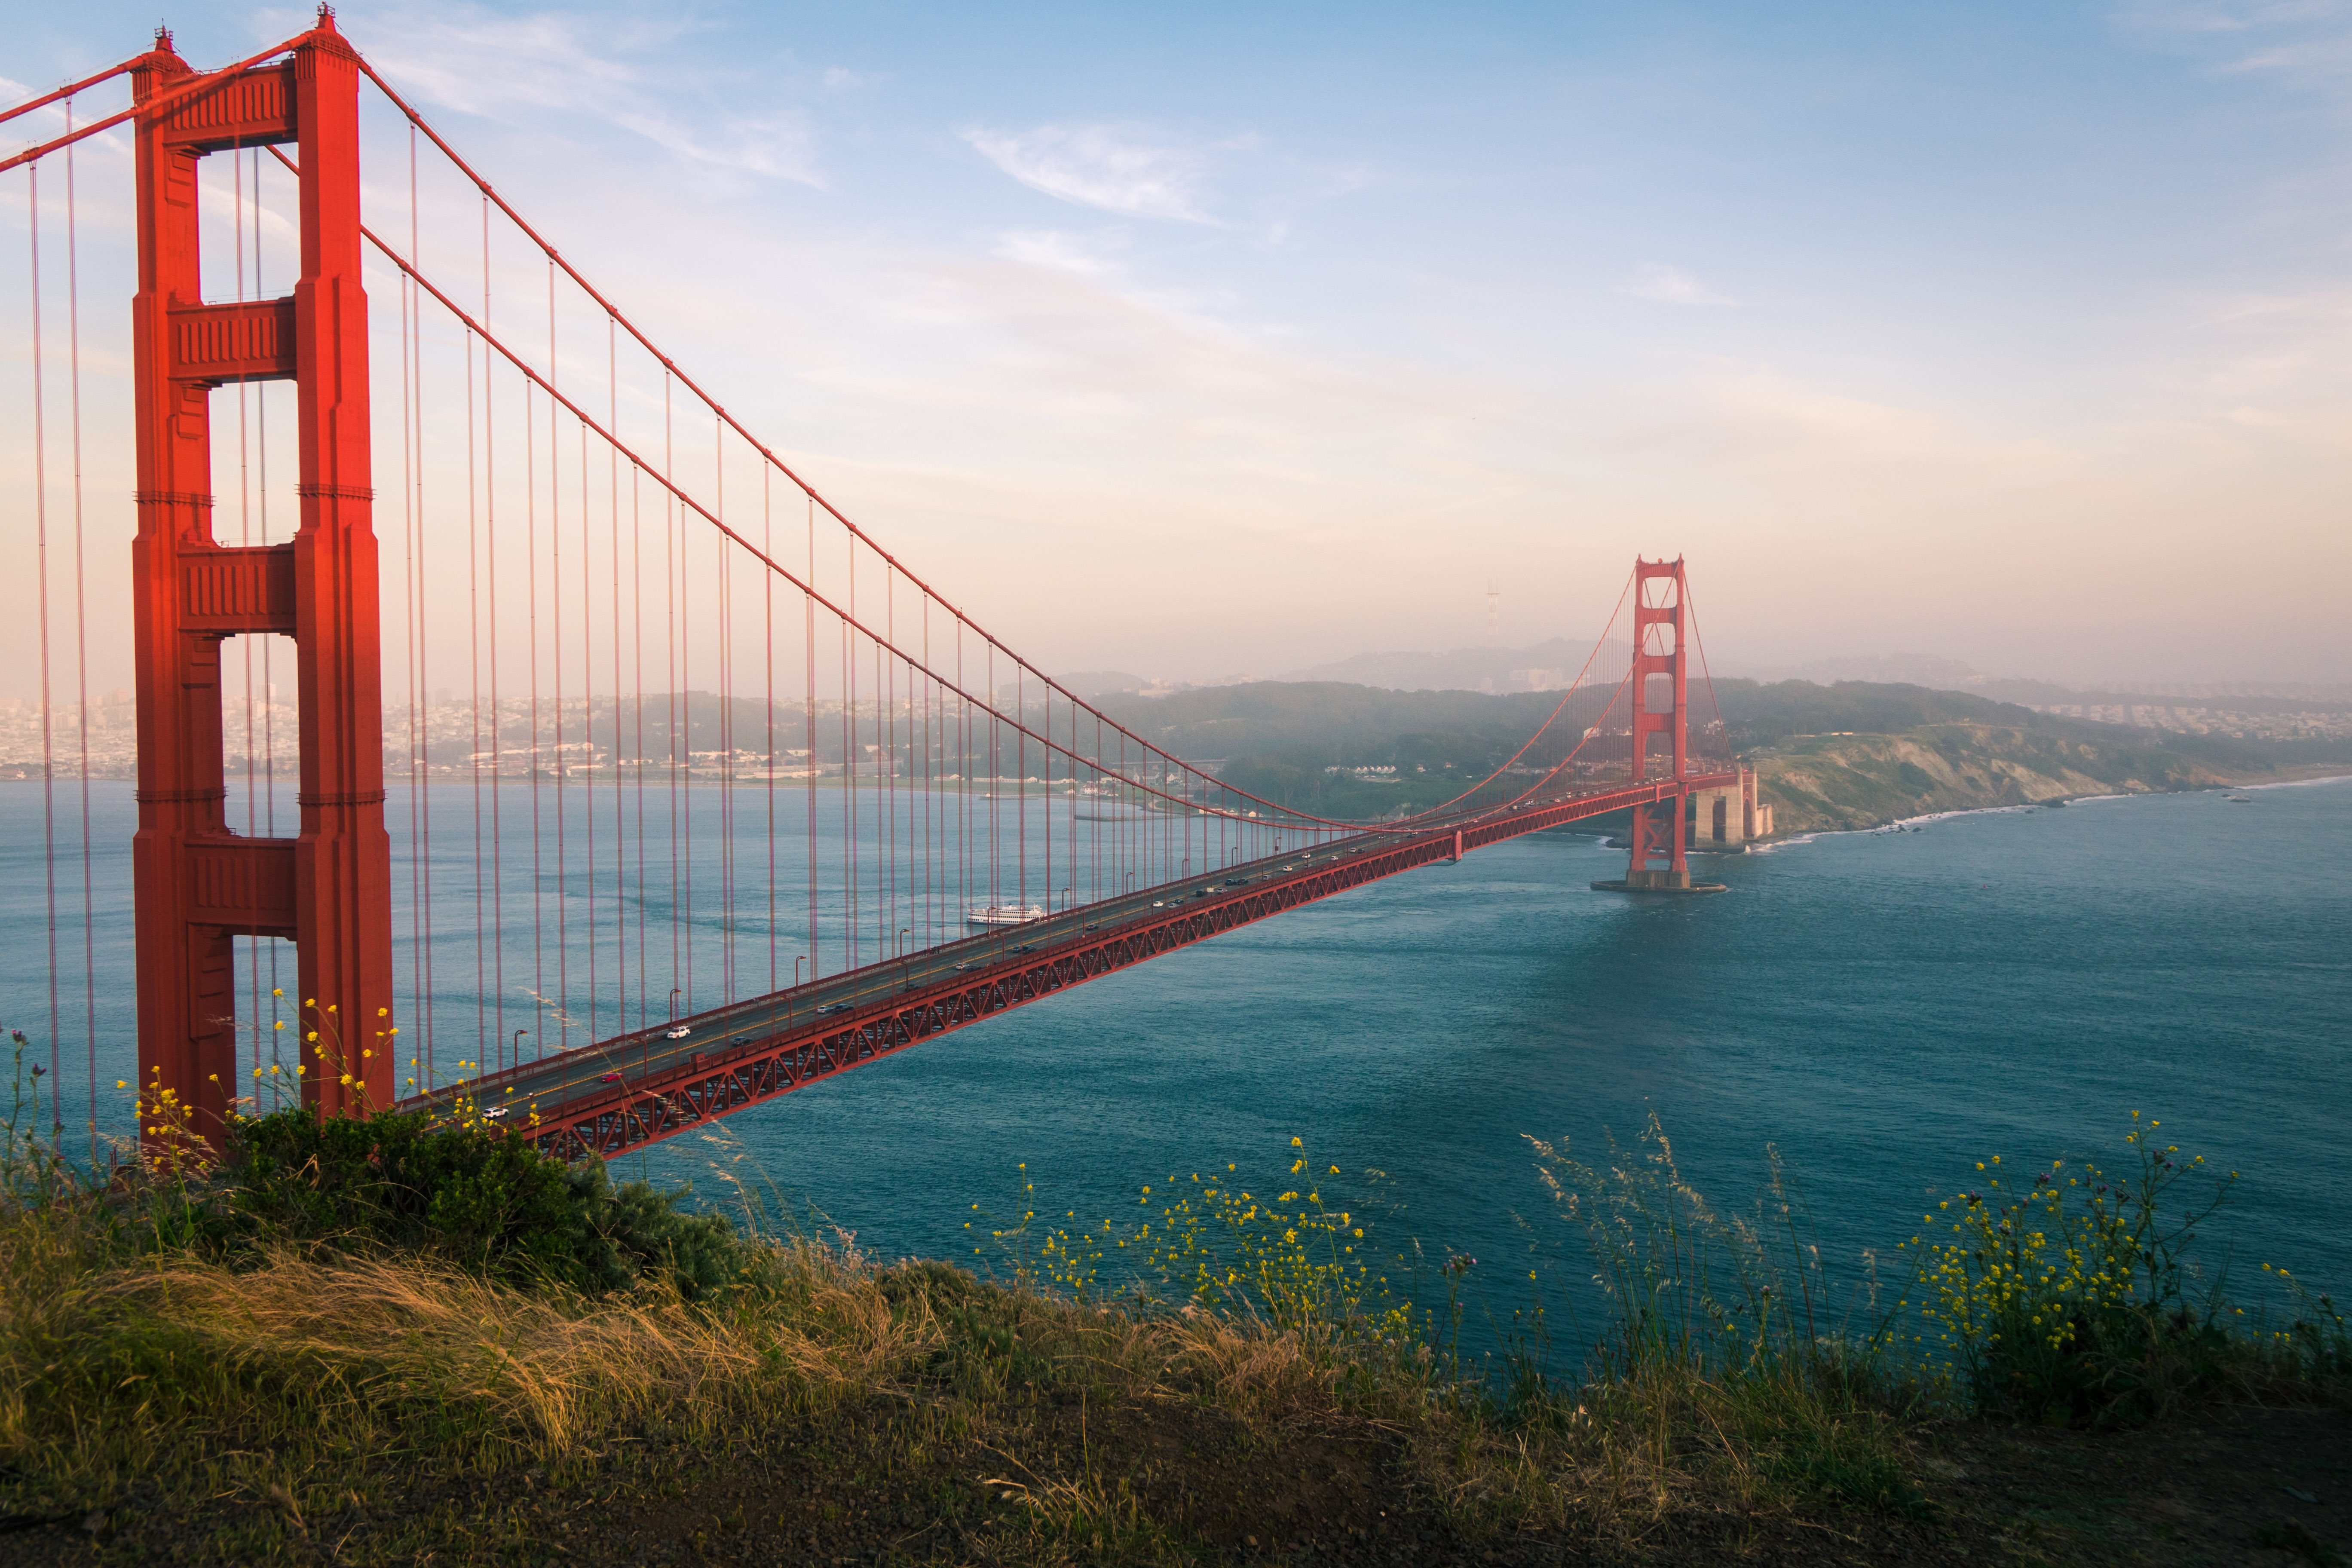 Golden Gate 4k Ultra HD Wallpaper by Trent Erwin